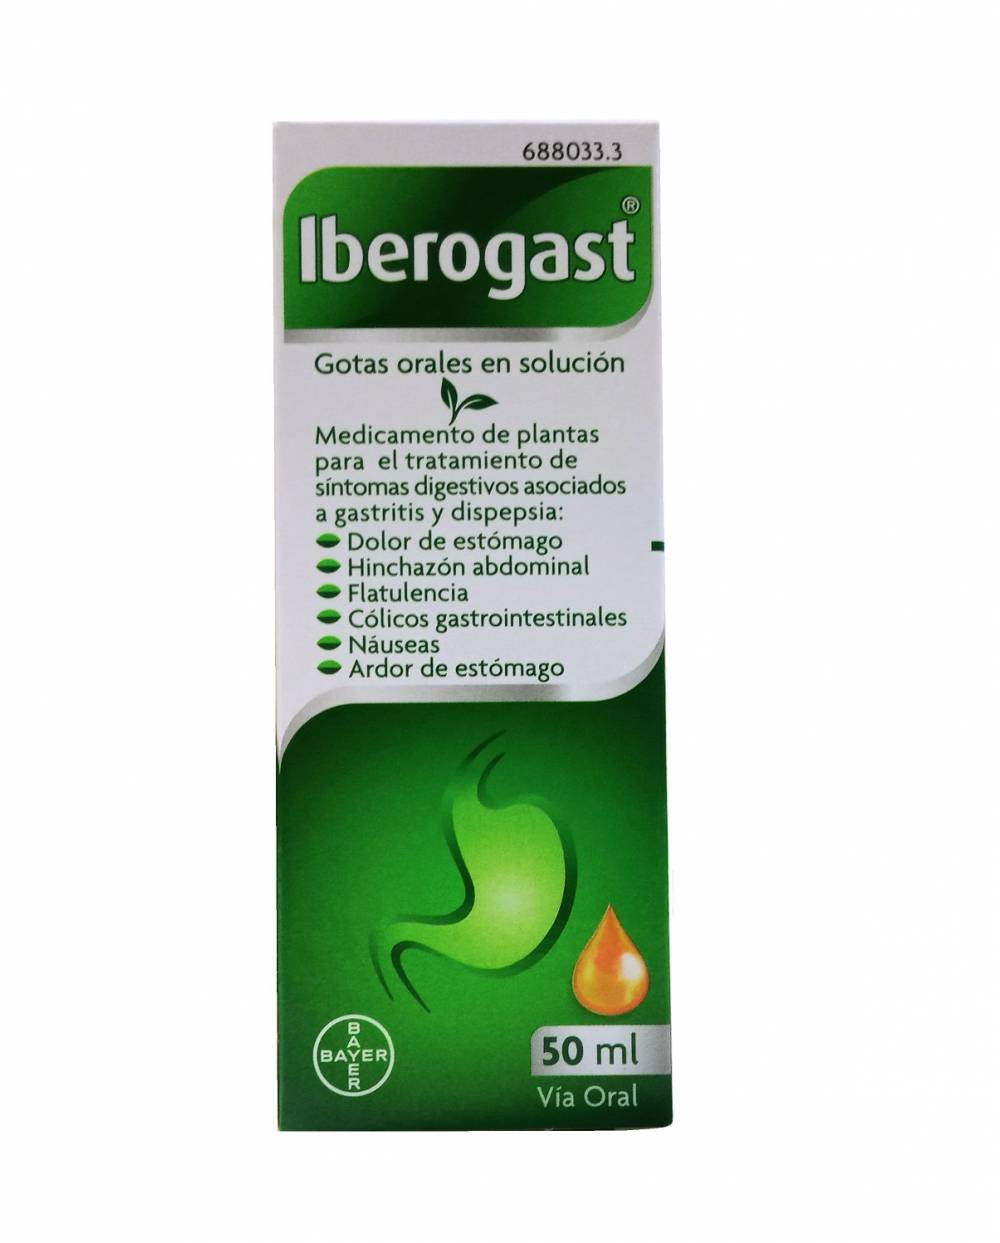 Iberogast - 50 ml - gotas orales